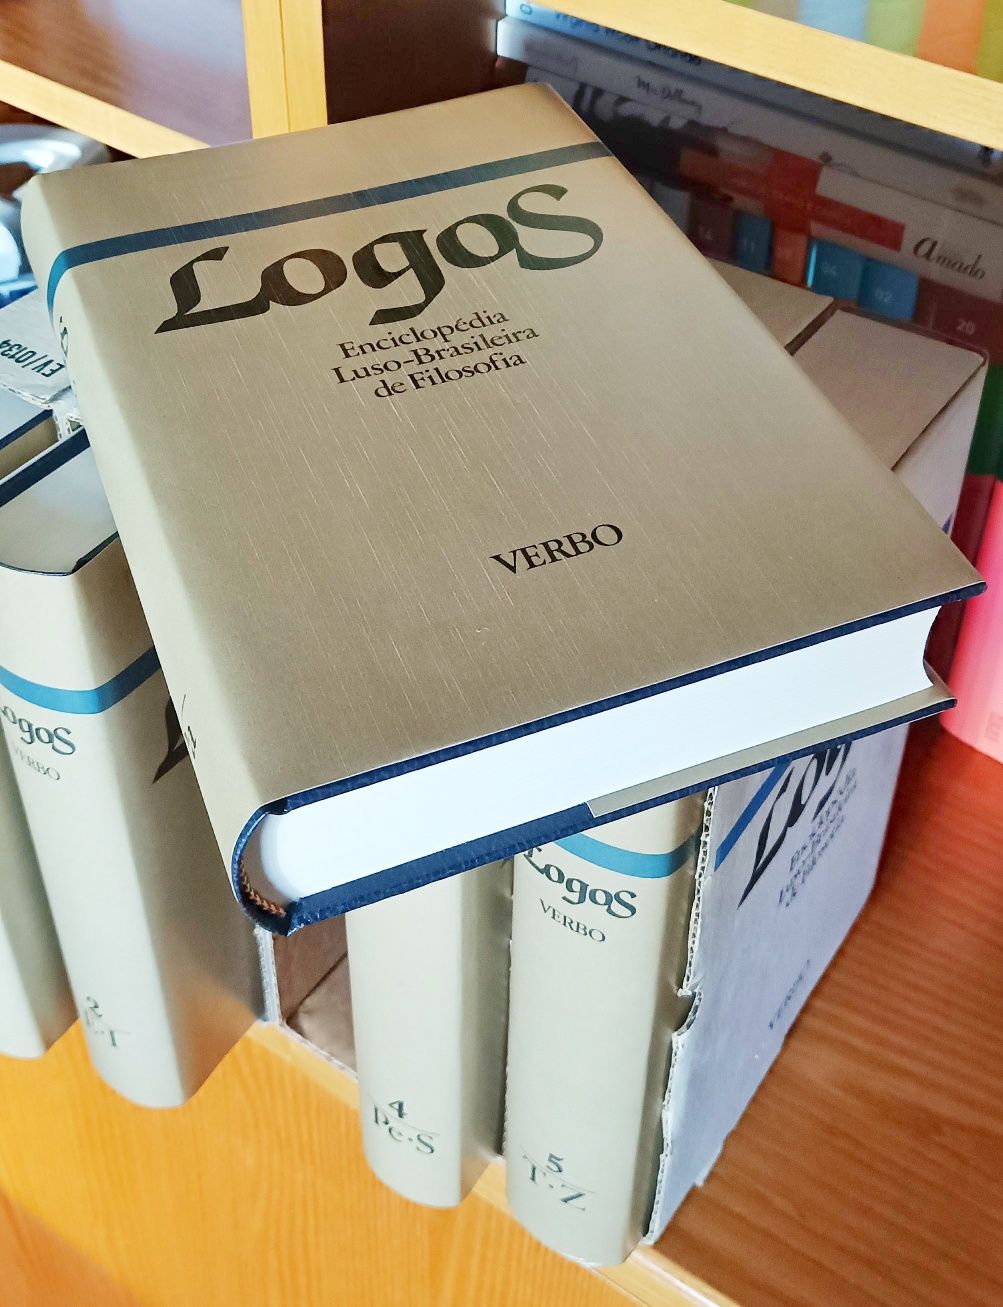 LOGOS - Enciclopédia Luso Brasileira de Filosofia